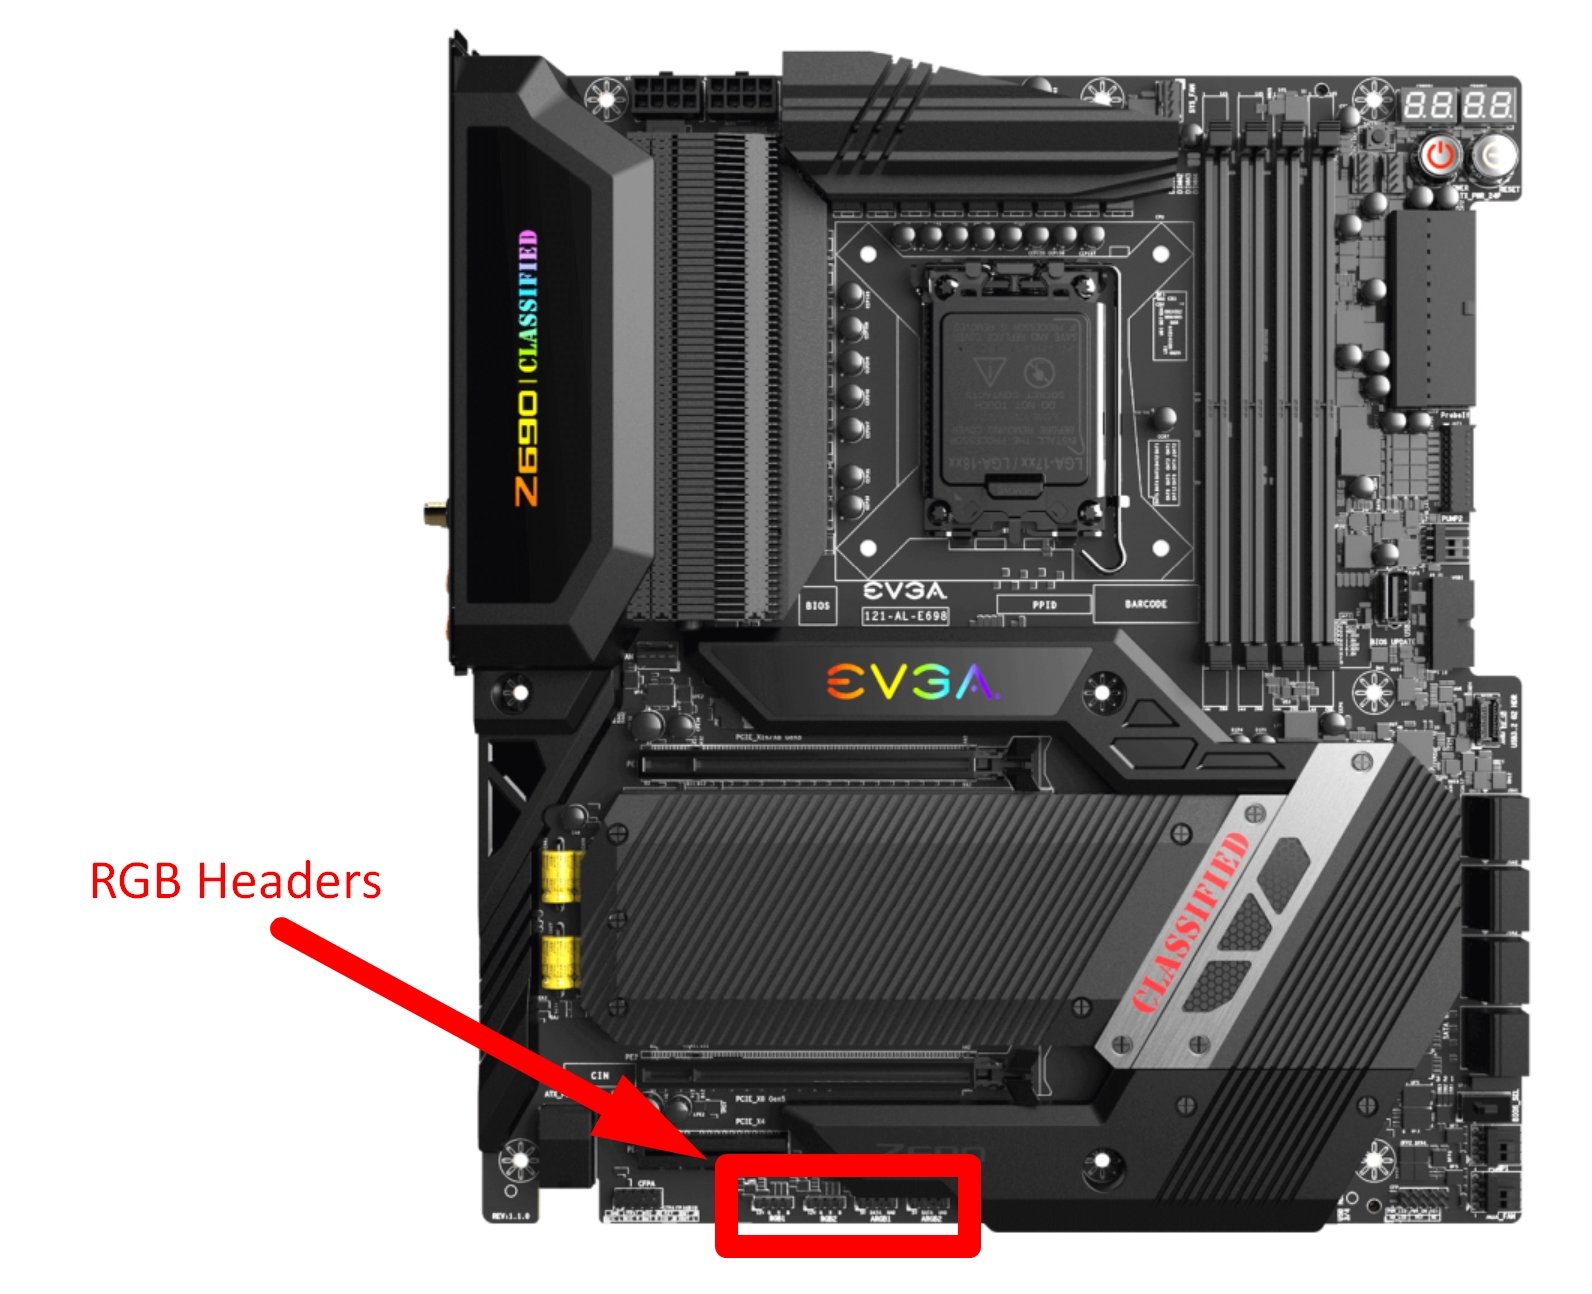 RGB Headers on Motherboard